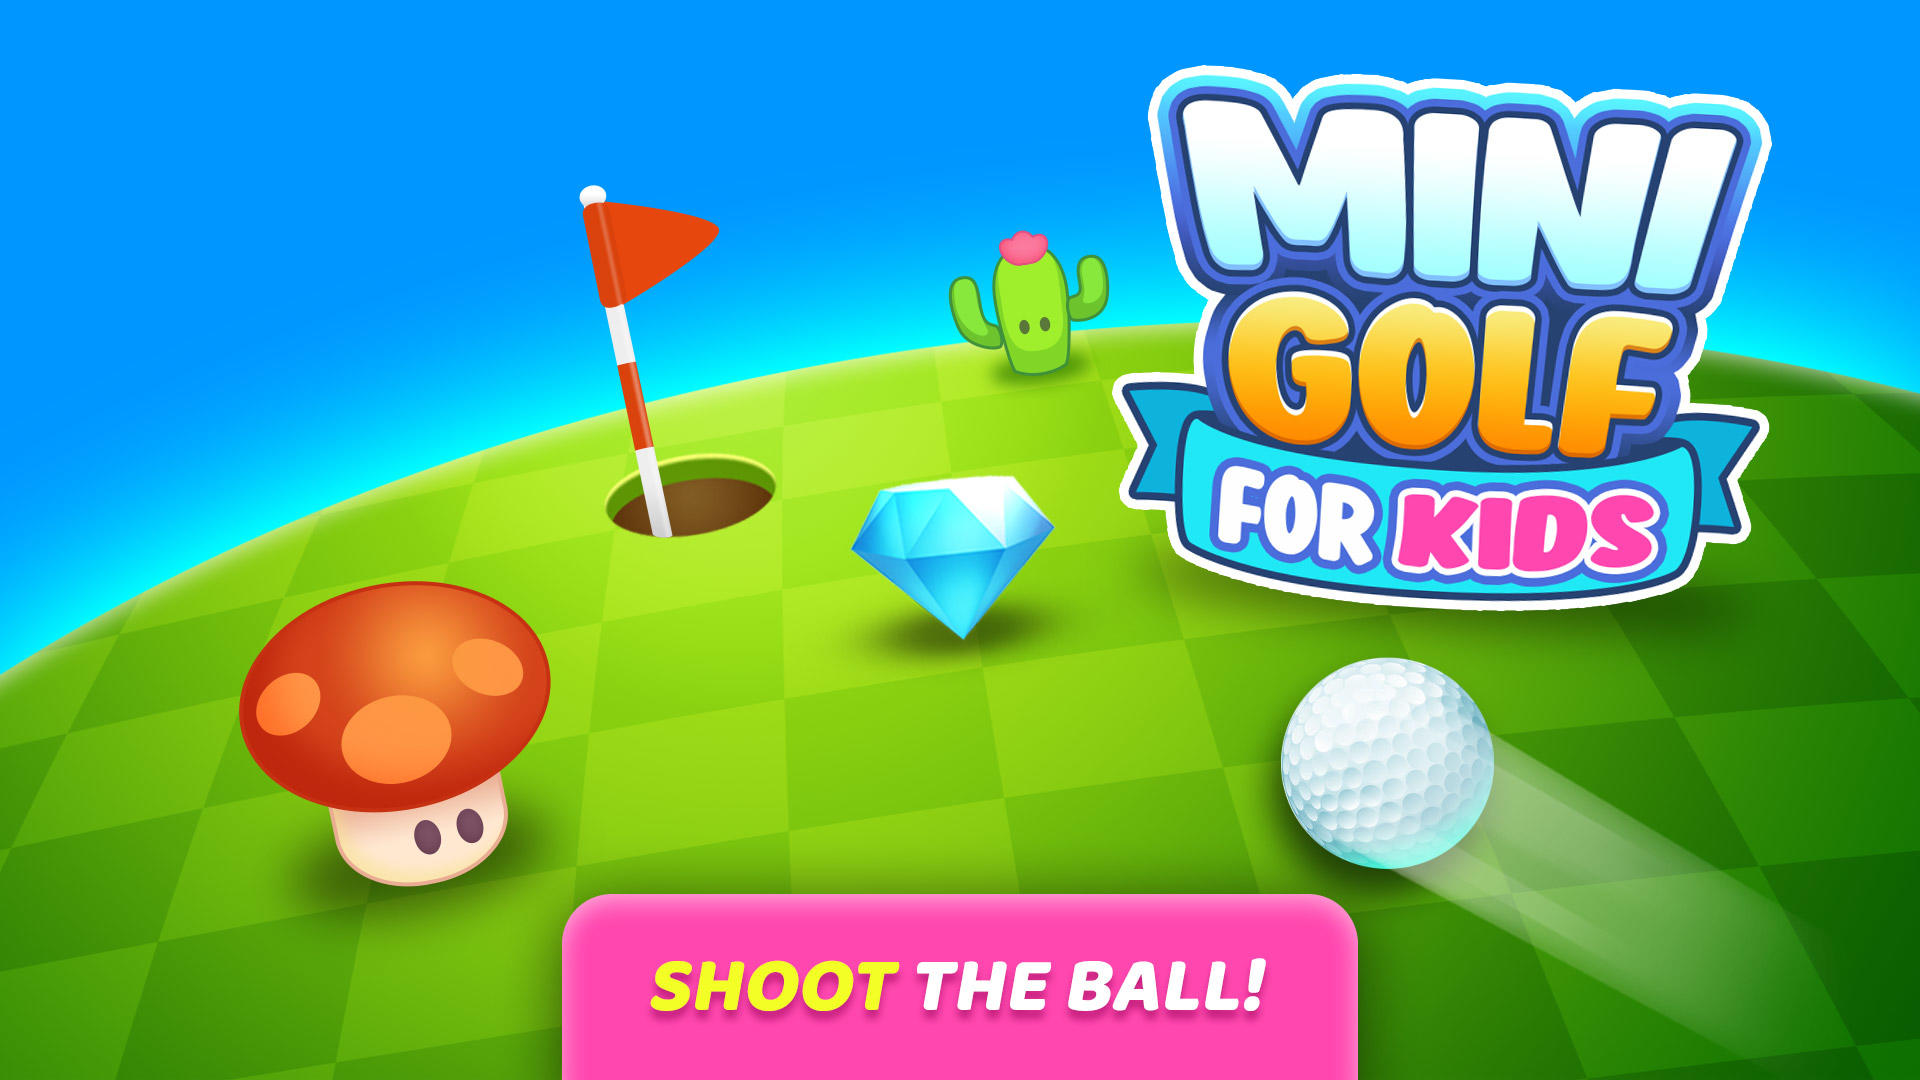 Screenshot 1 of Permainan Golf Mini untuk Kanak-kanak 1.301